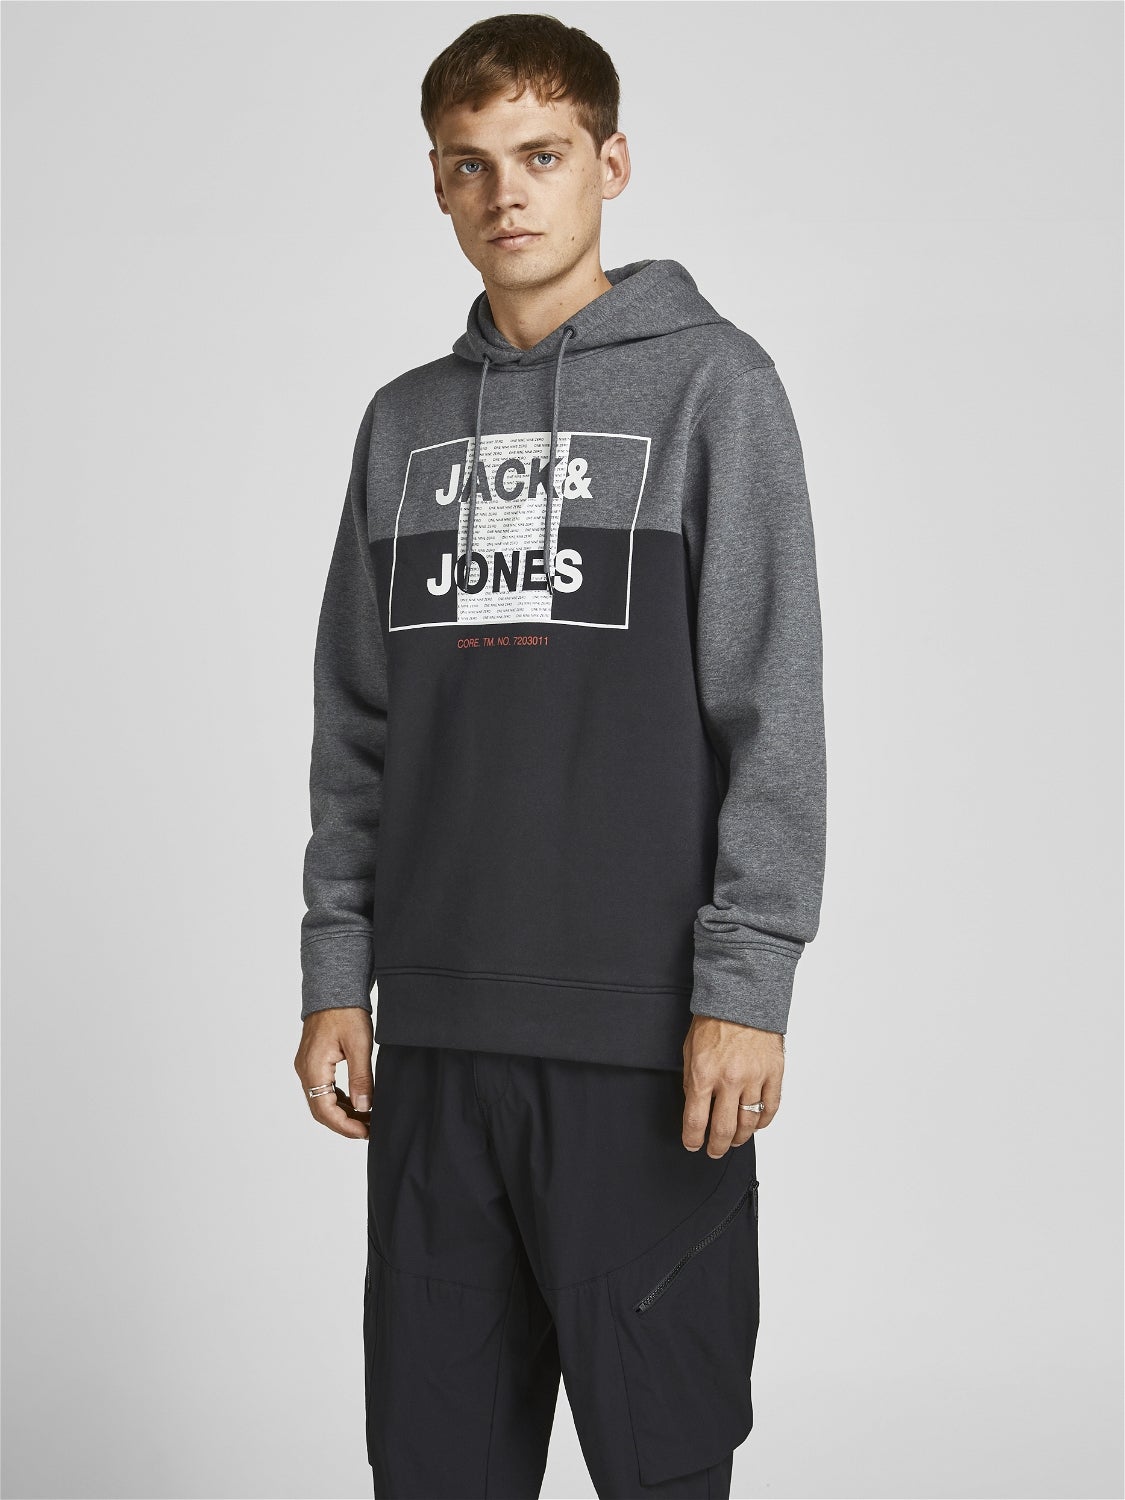 Rabatt 64 % Grau M Jack & Jones sweatshirt HERREN Pullovers & Sweatshirts Casual 